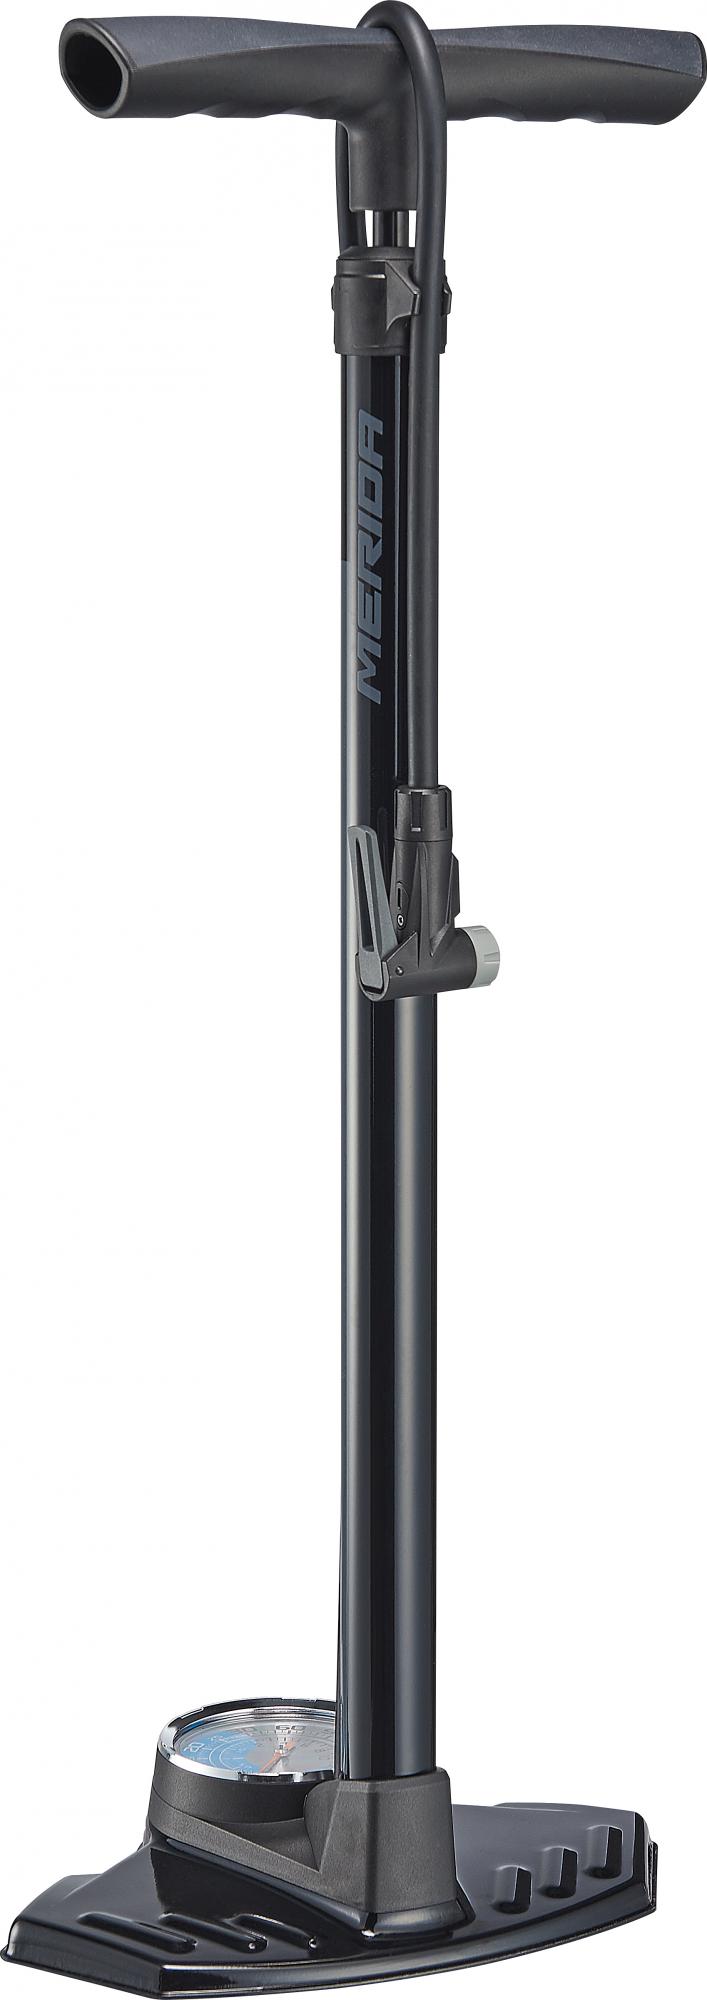 Насос напольный Merida Dual Gauge High press. Floor Pump(160psi-11bar)1550гр. Black/Grey(2274001731)